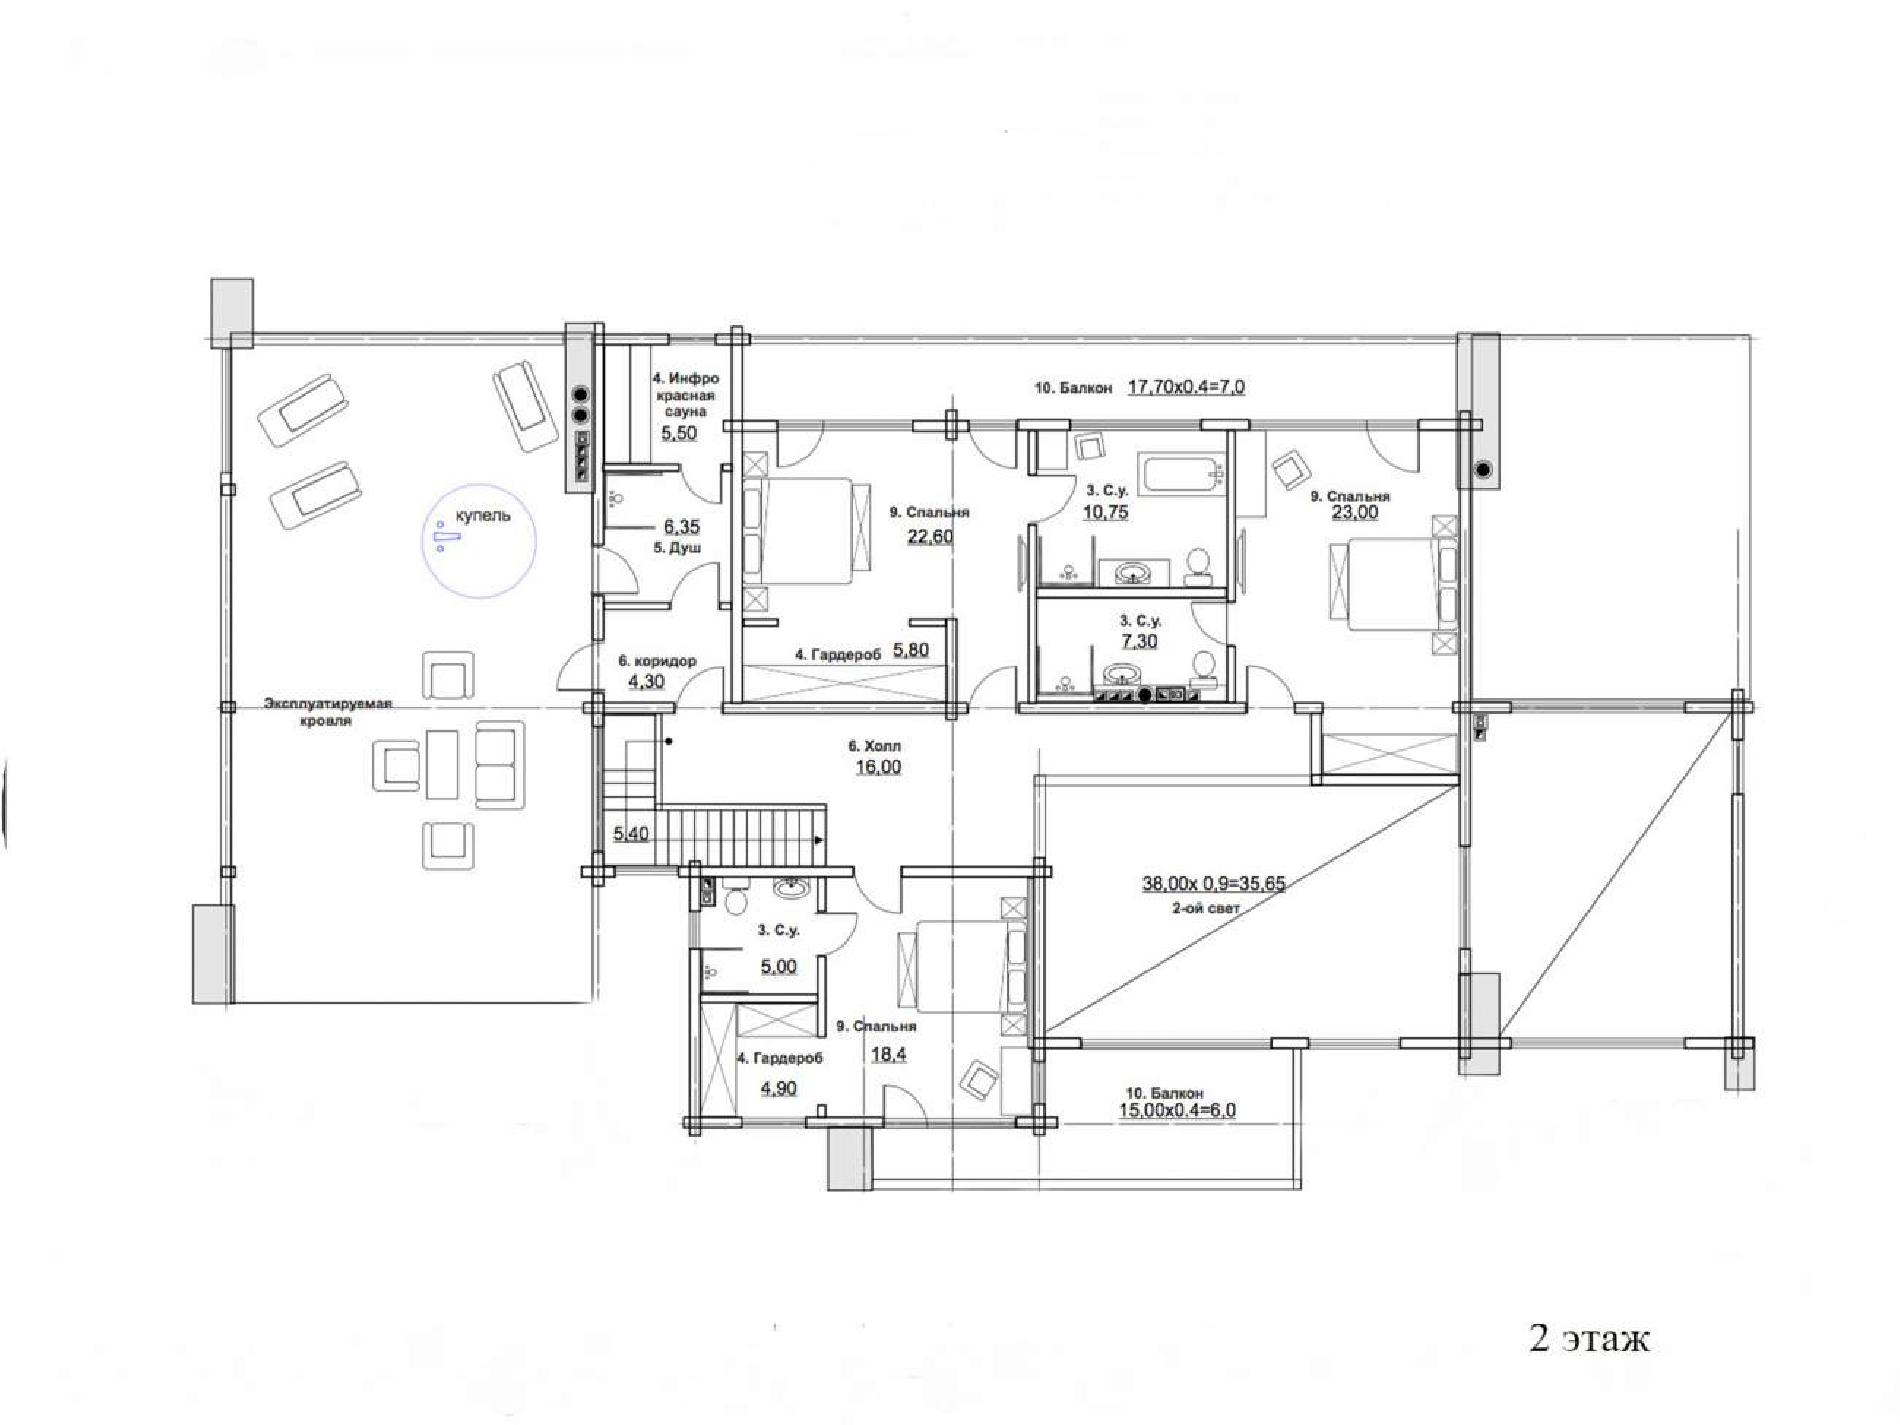 Планировка проекта дома №rh-616 rh-616 (2)p.jpg